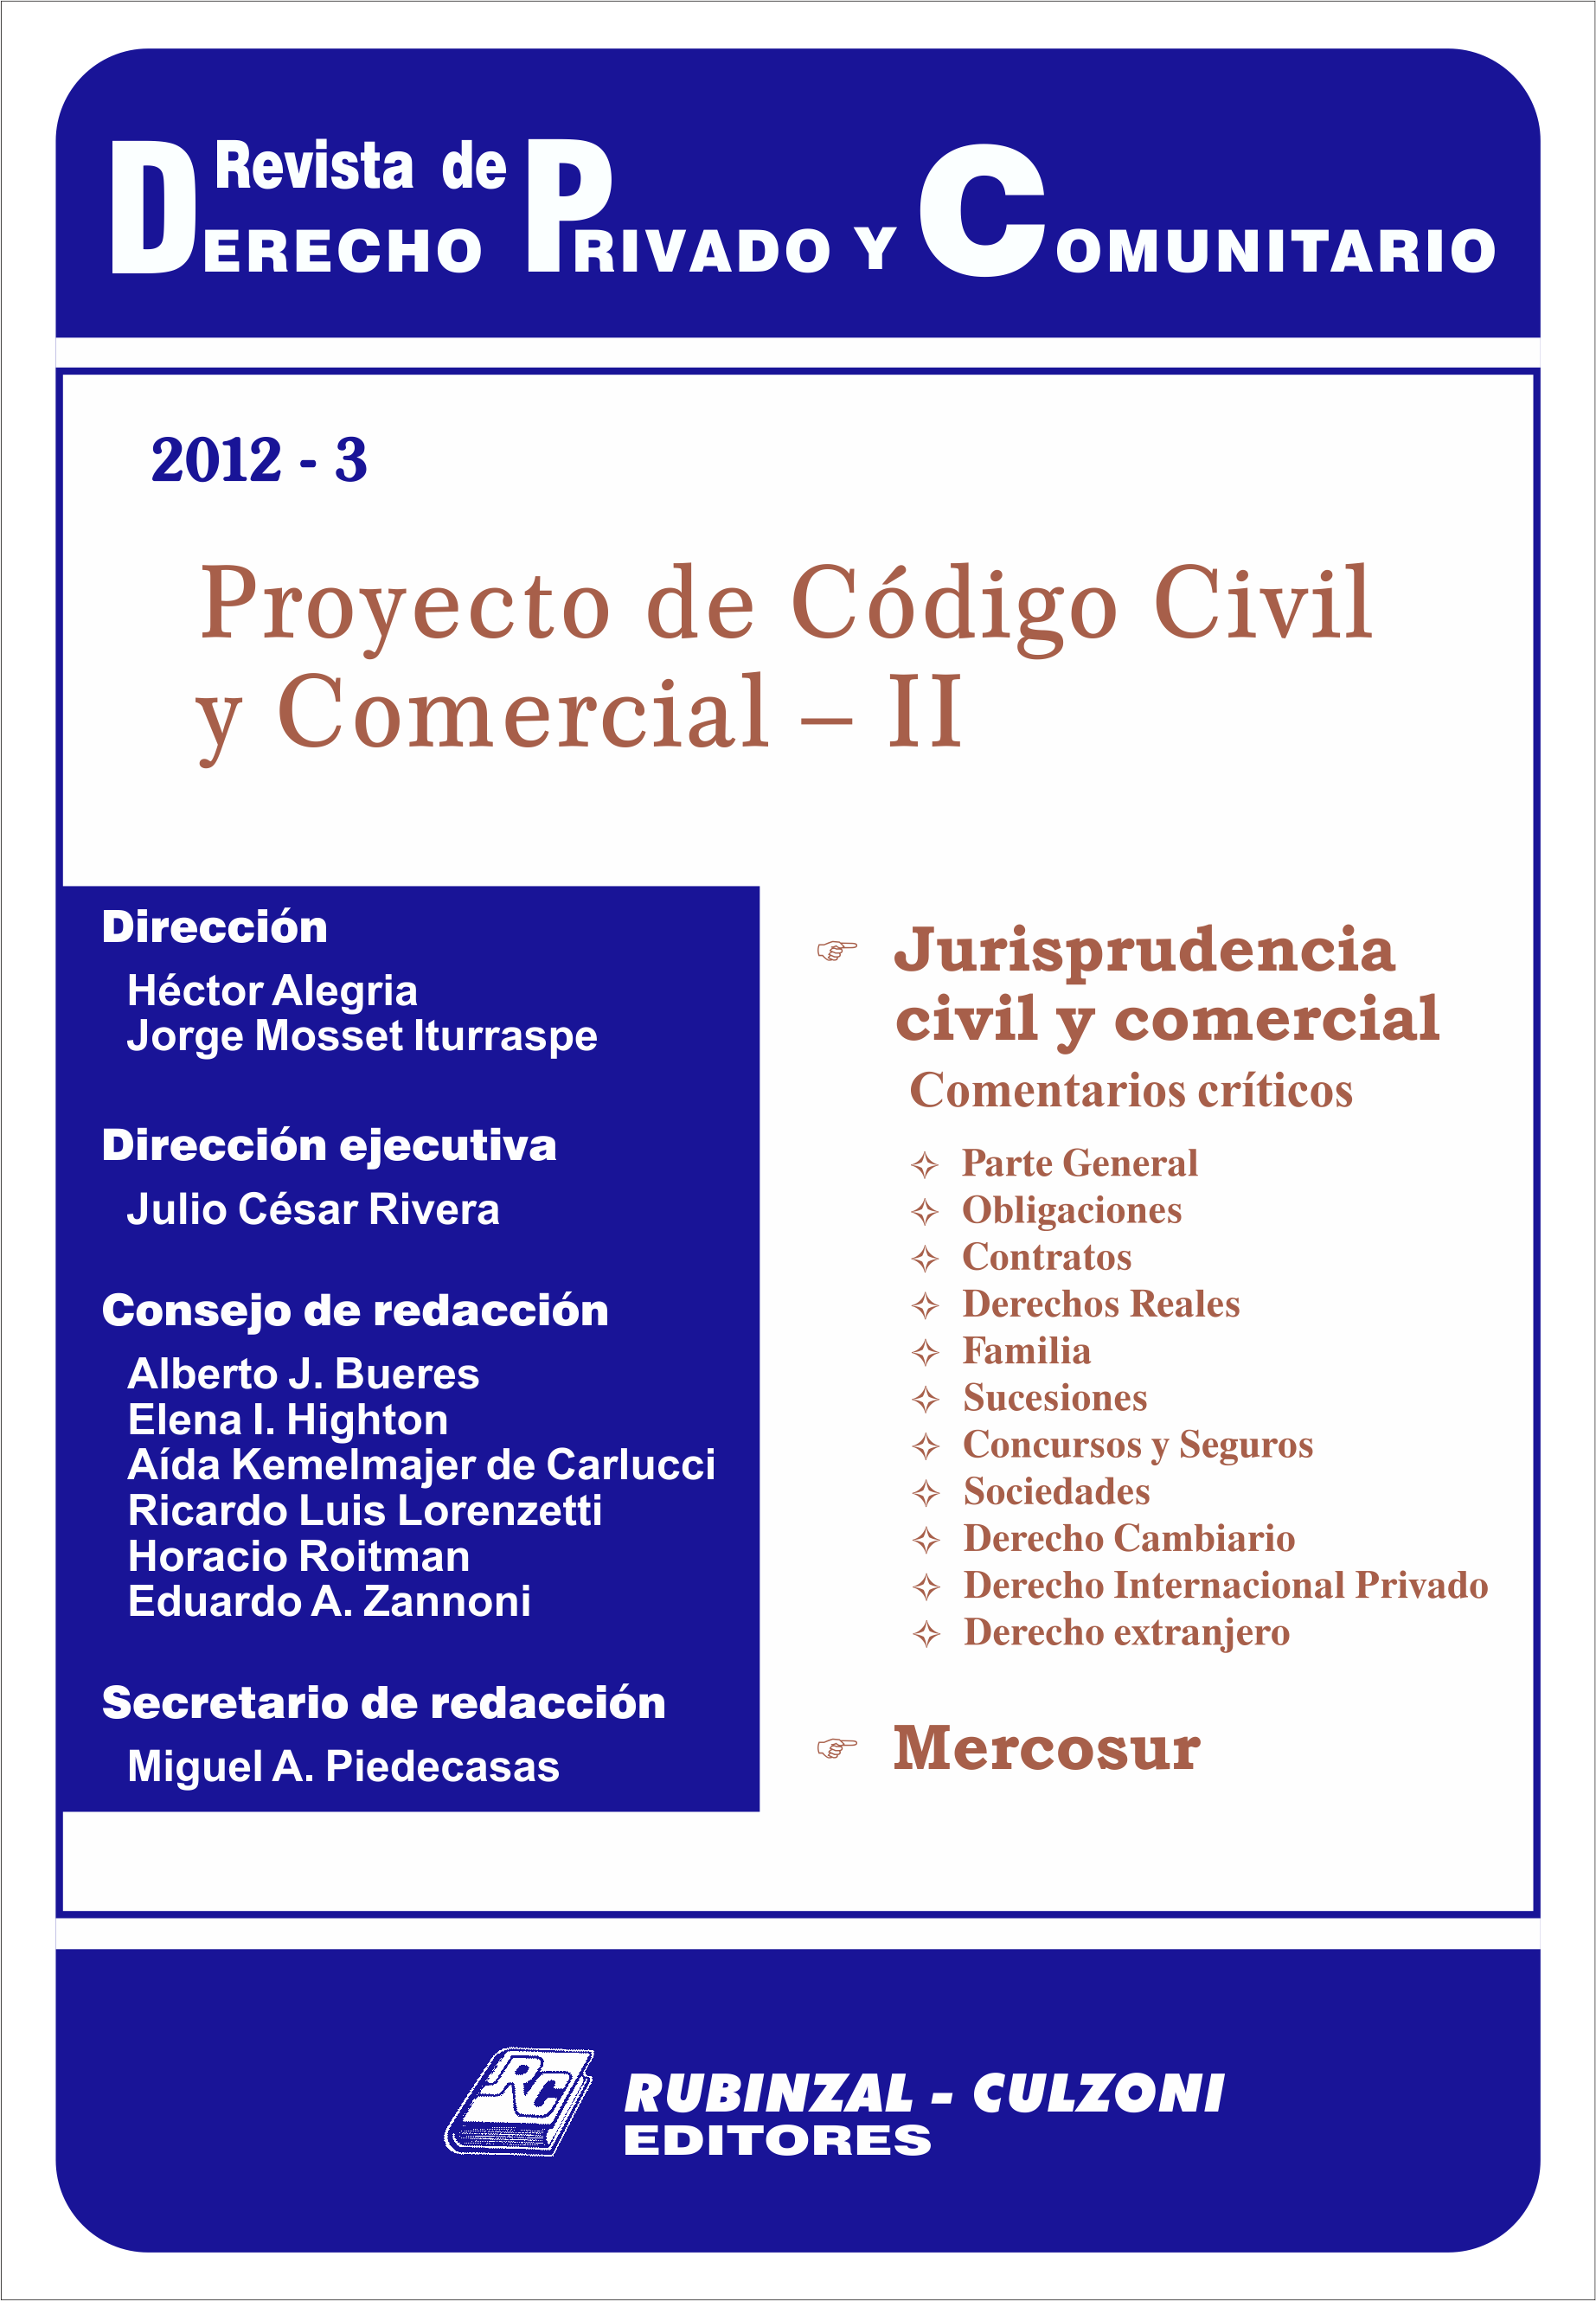 Revista de Derecho Privado y Comunitario - Proyecto de Código Civil y Comercial - II.